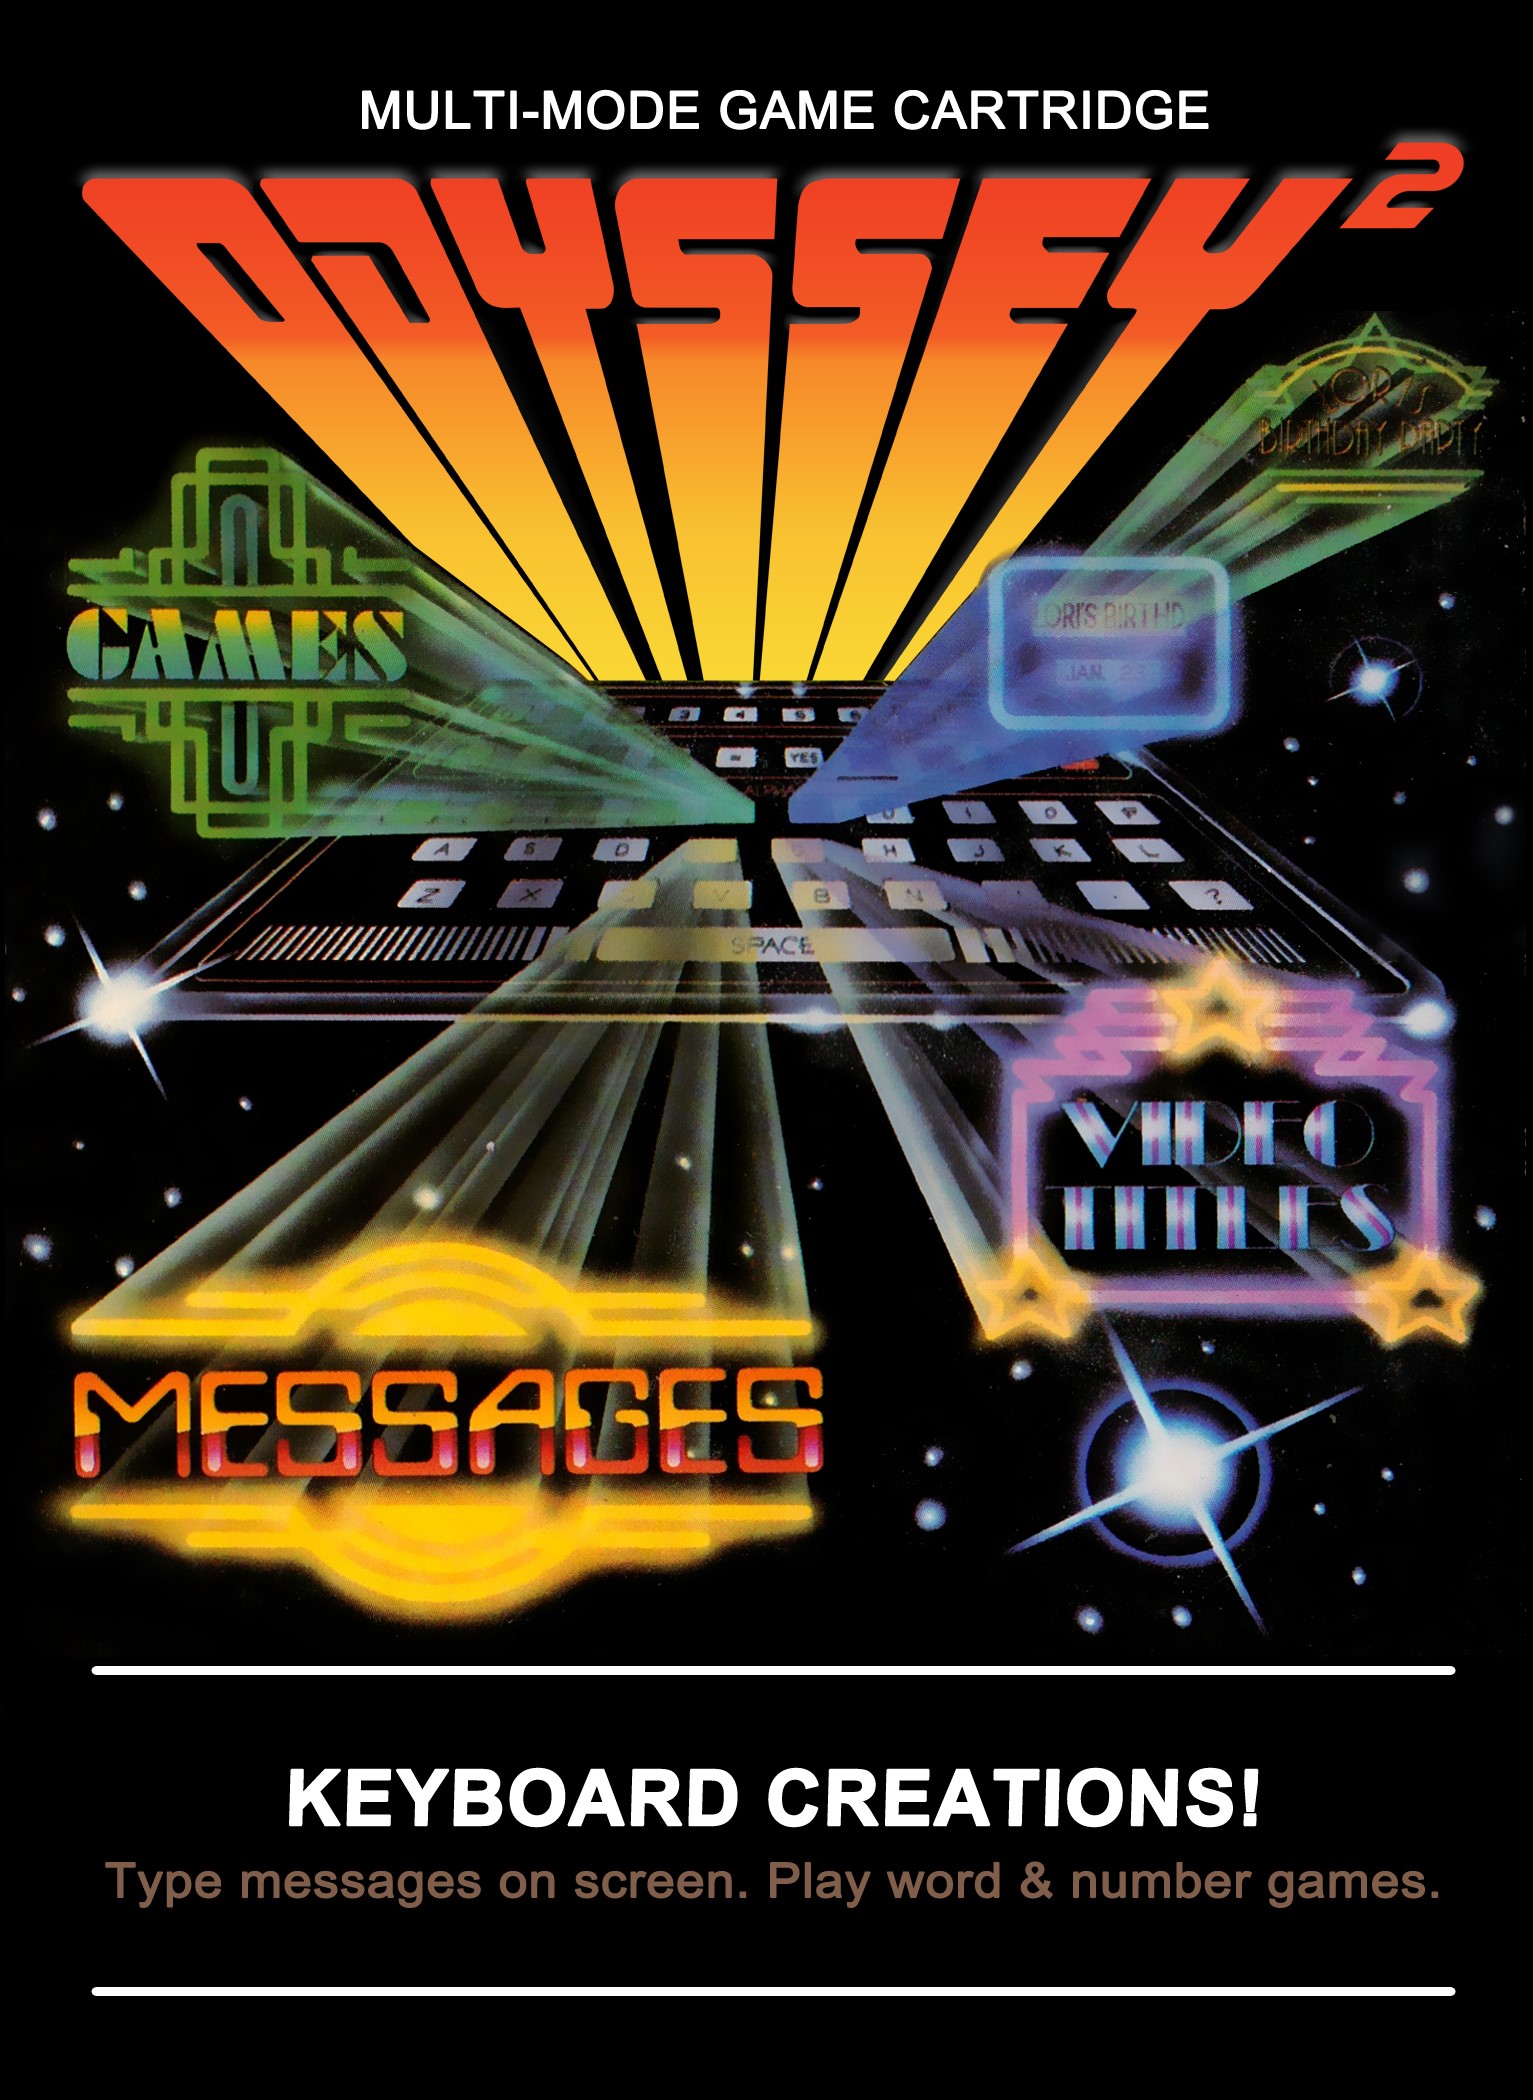 'Keyboard Creations'